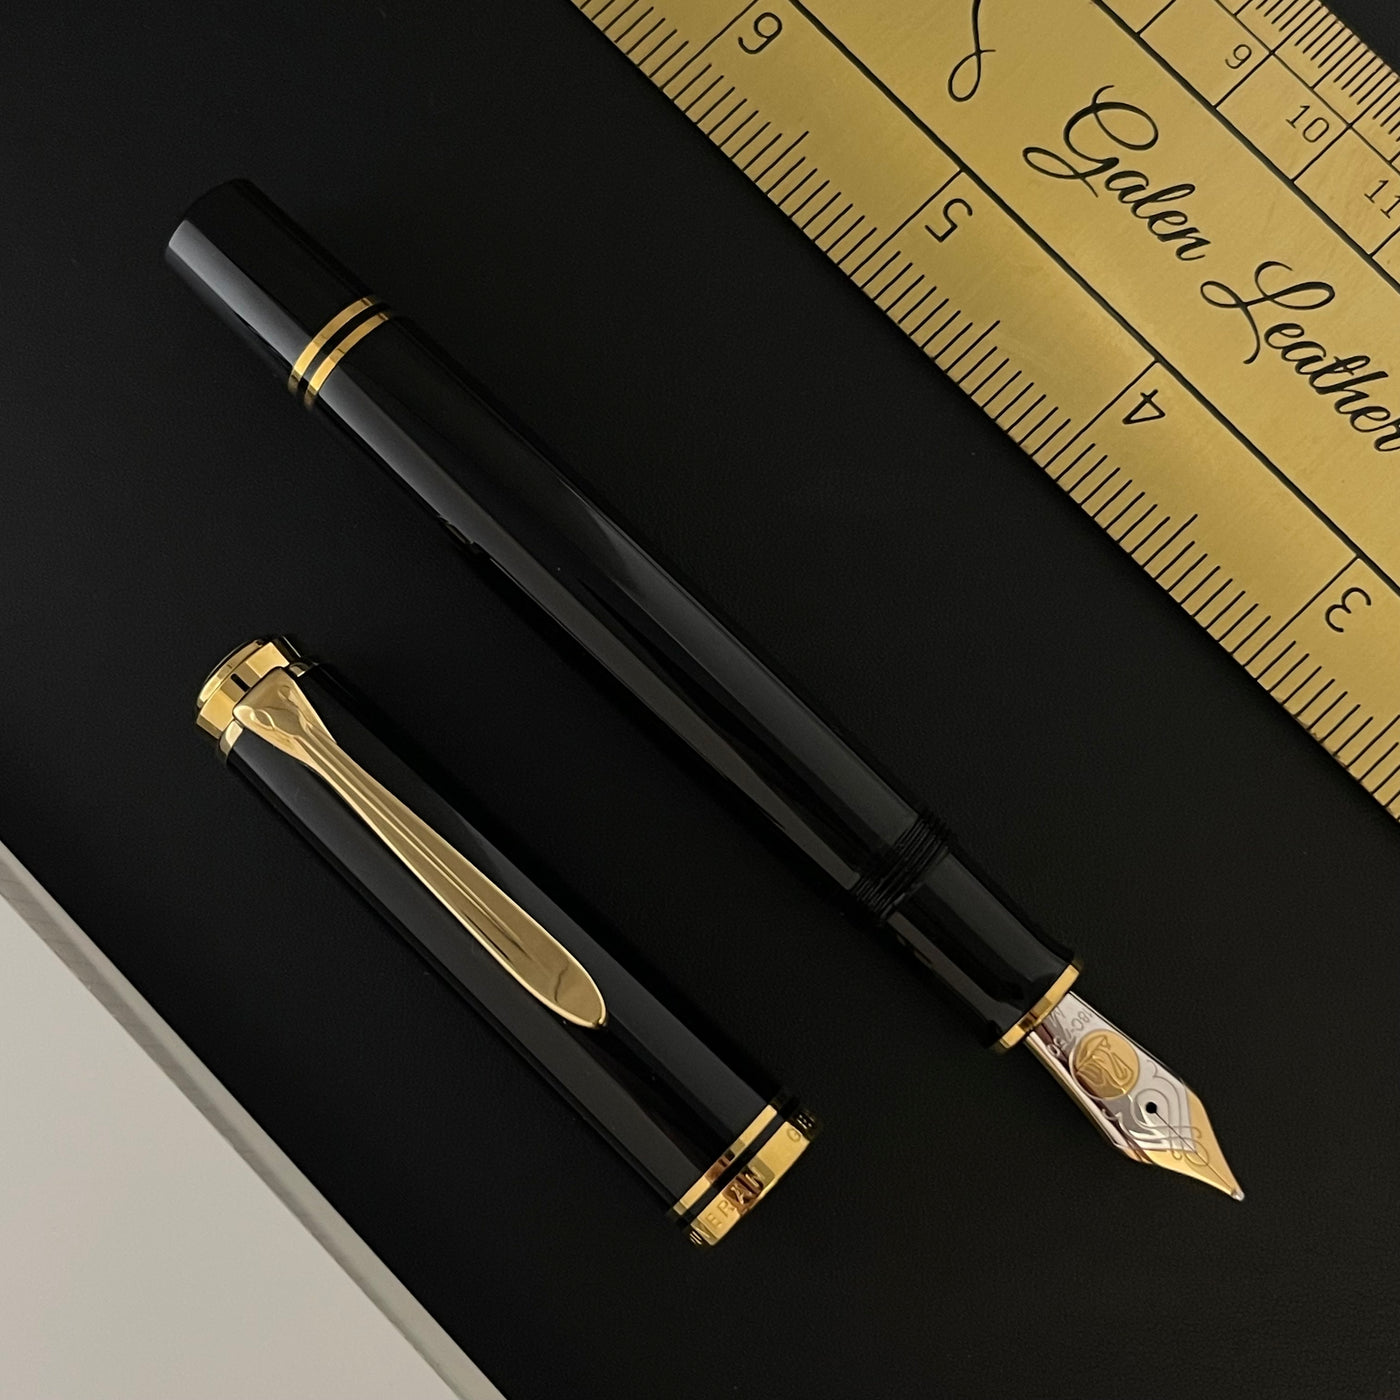 Pelikan Souveran M800 Fountain Pen - Black w/ Gold Trim